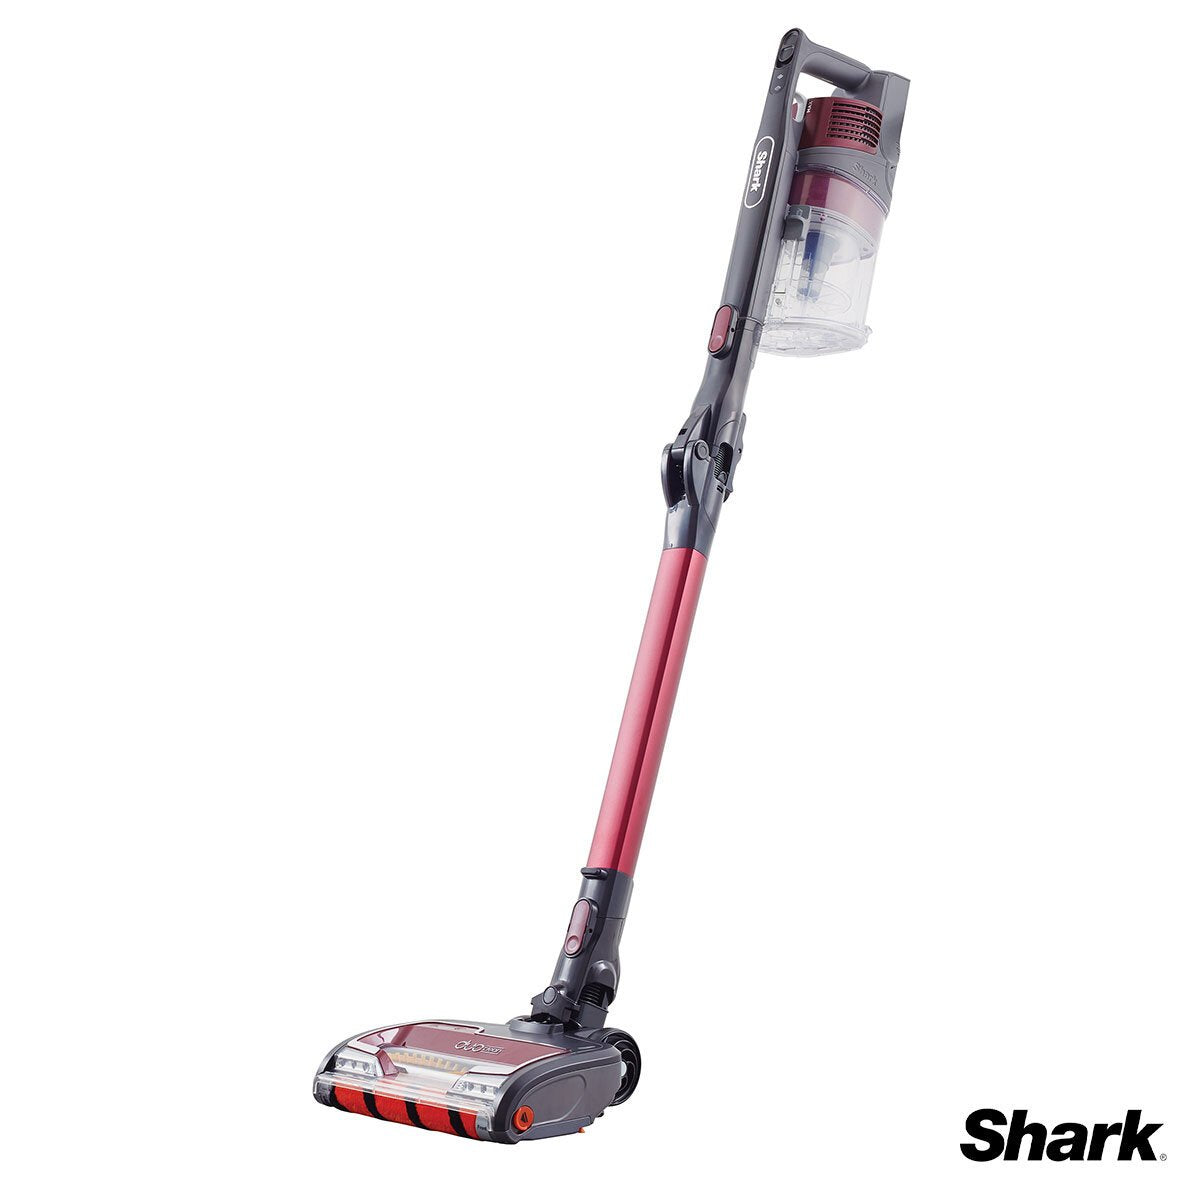 Shark Duo Clean Vacuum Cleaner, IZ251UKCO